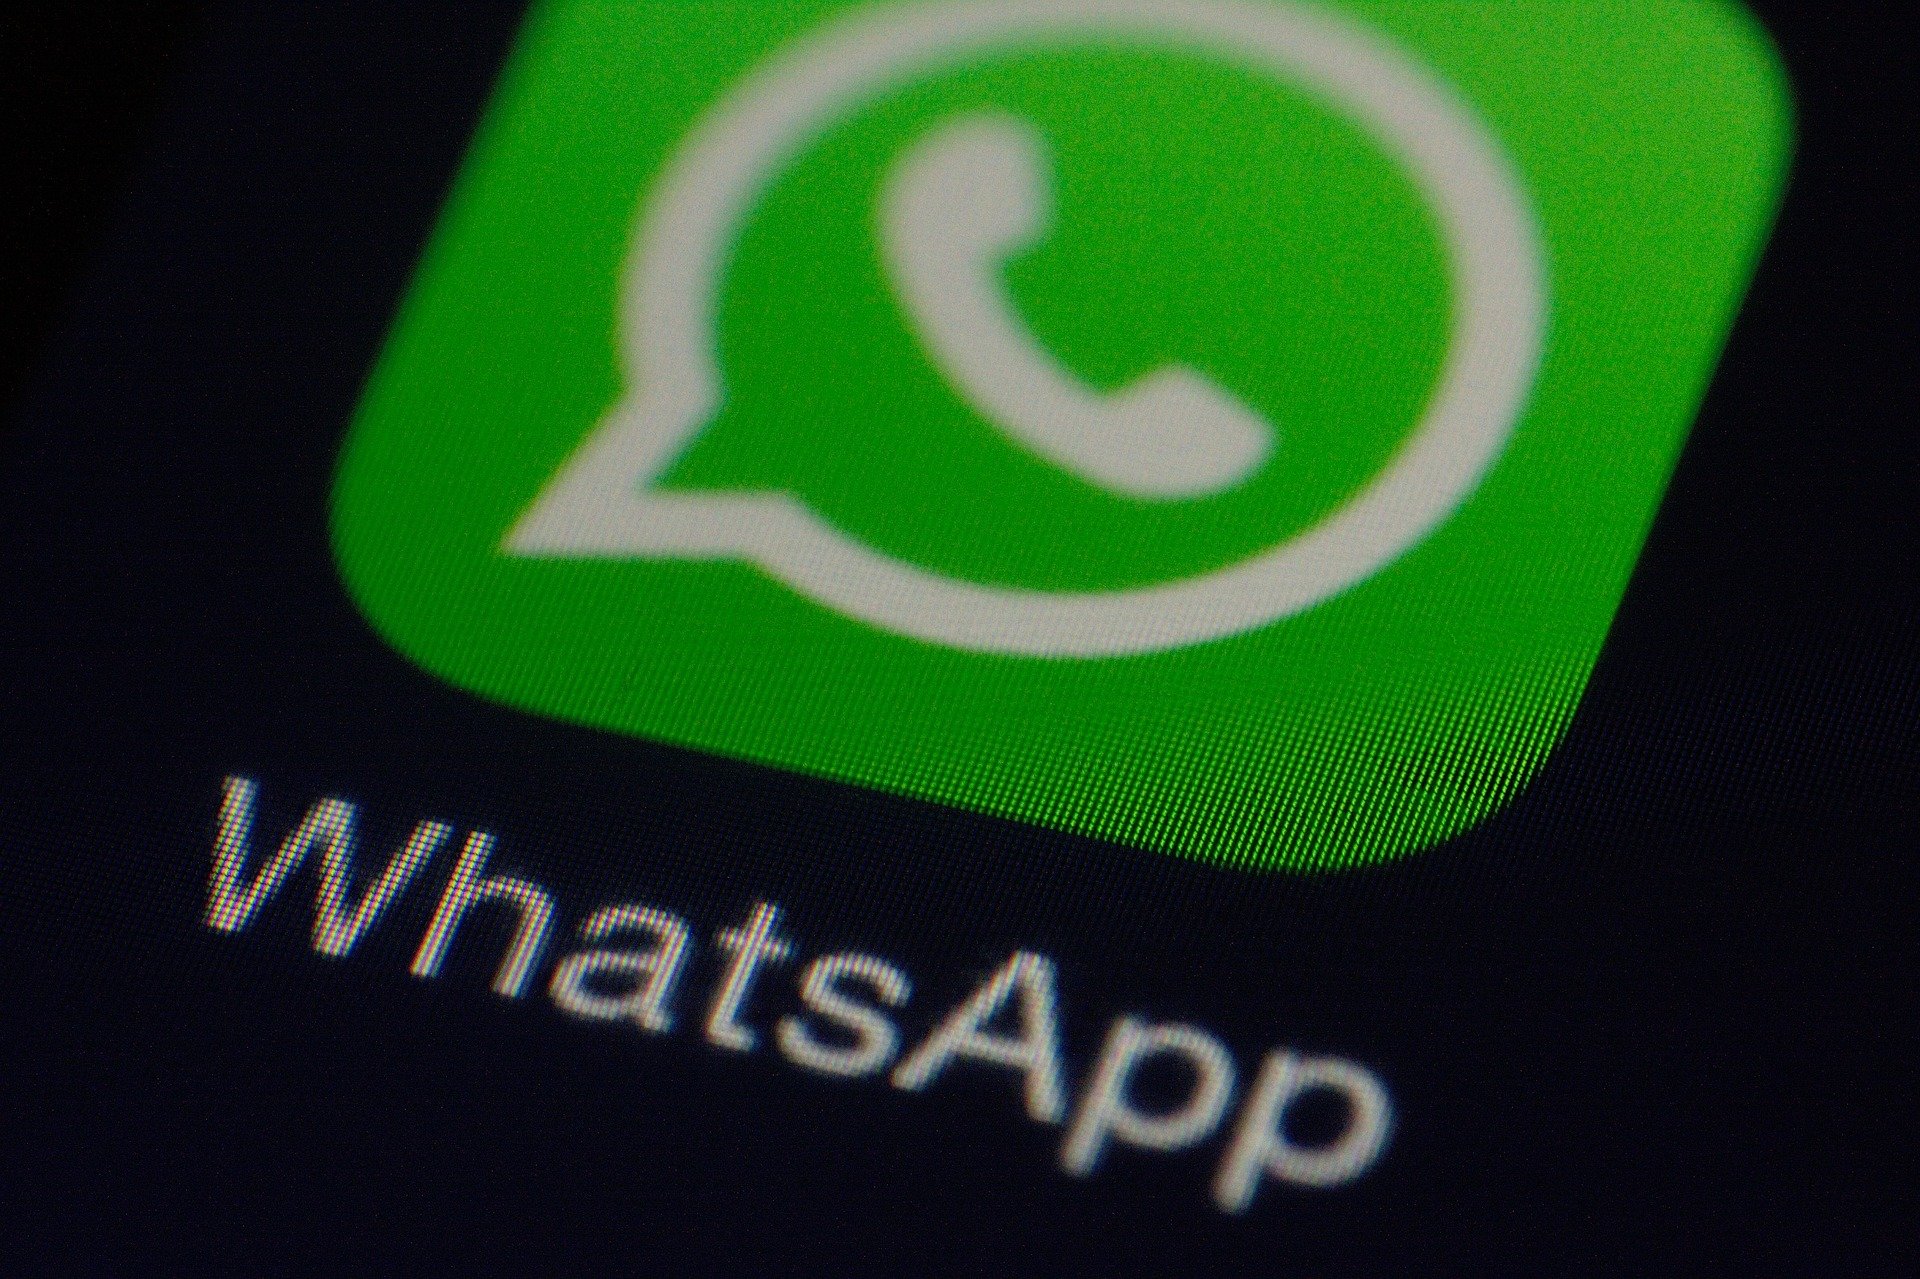 Tela de celular com o app de mensagens WhatsApp